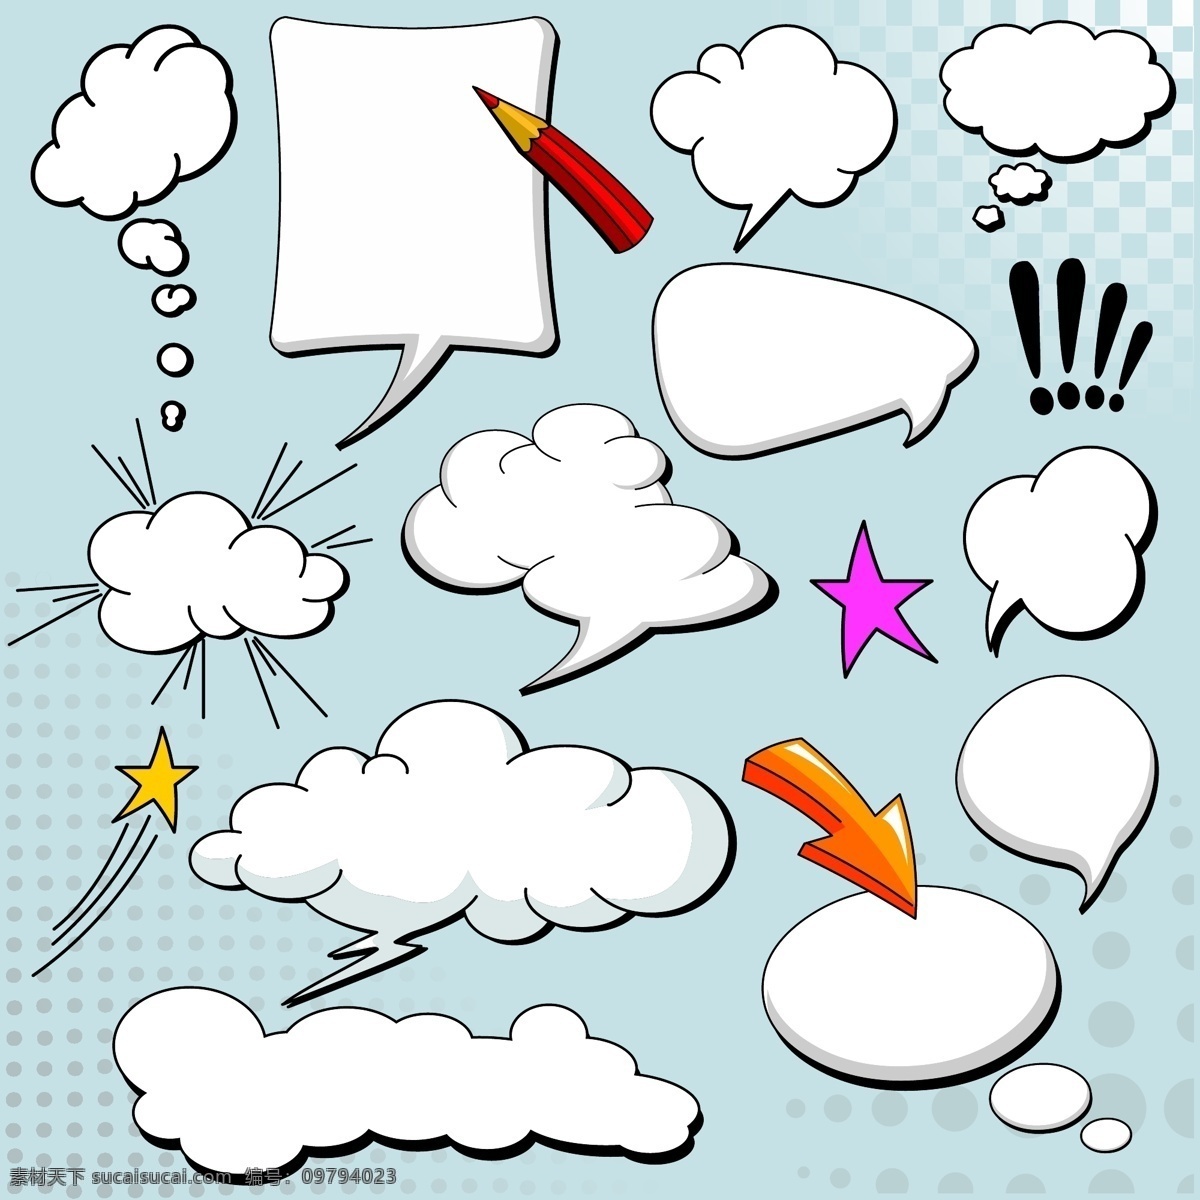 漫画 风格 蘑菇 云层 对话框 矢量 爆炸 箭头 铅笔 图形 星星 云 蘑菇云 矢量图 矢量人物